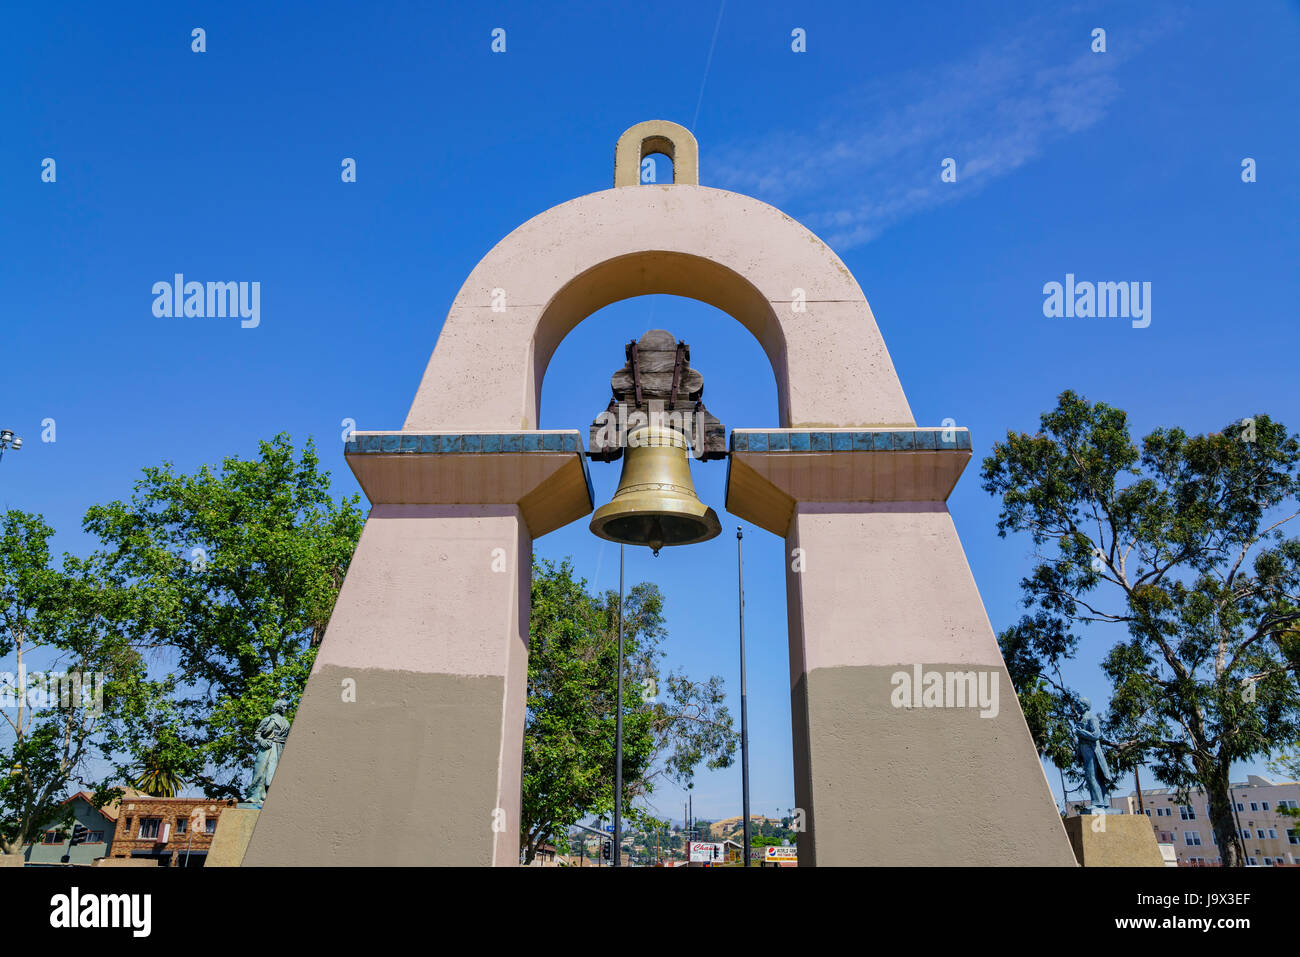 Bell tower at El Parque de Mexico Park, Los Angeles, California Stock Photo